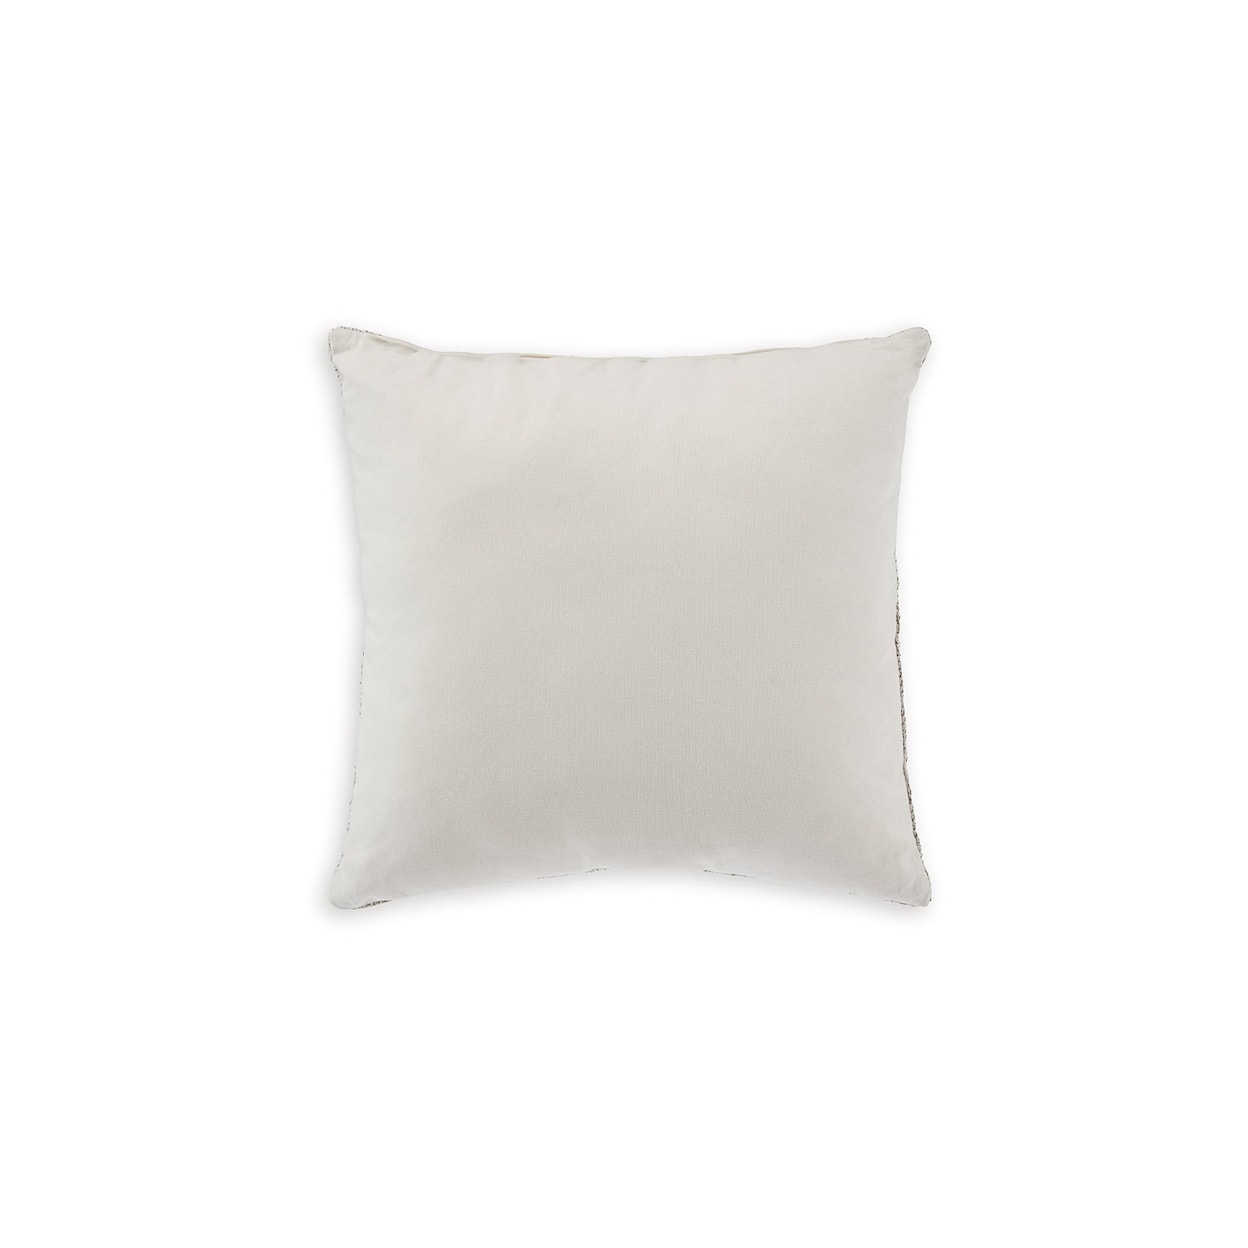 Michael Alan Select Carddon Pillow